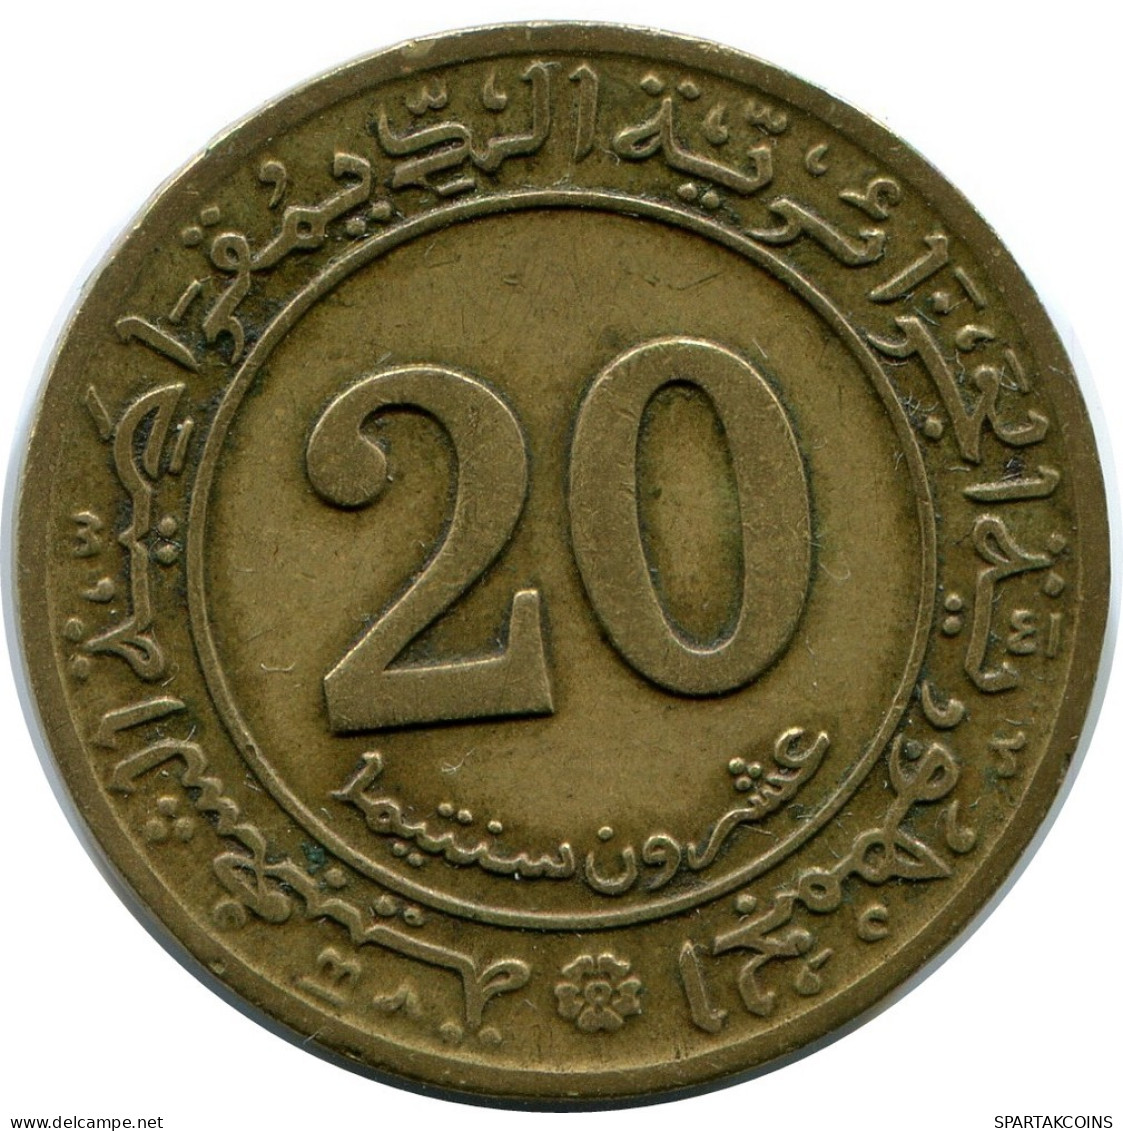 20 CENTIMES 1972 ALGERIEN ALGERIA Münze #AP971.D.A - Algerije